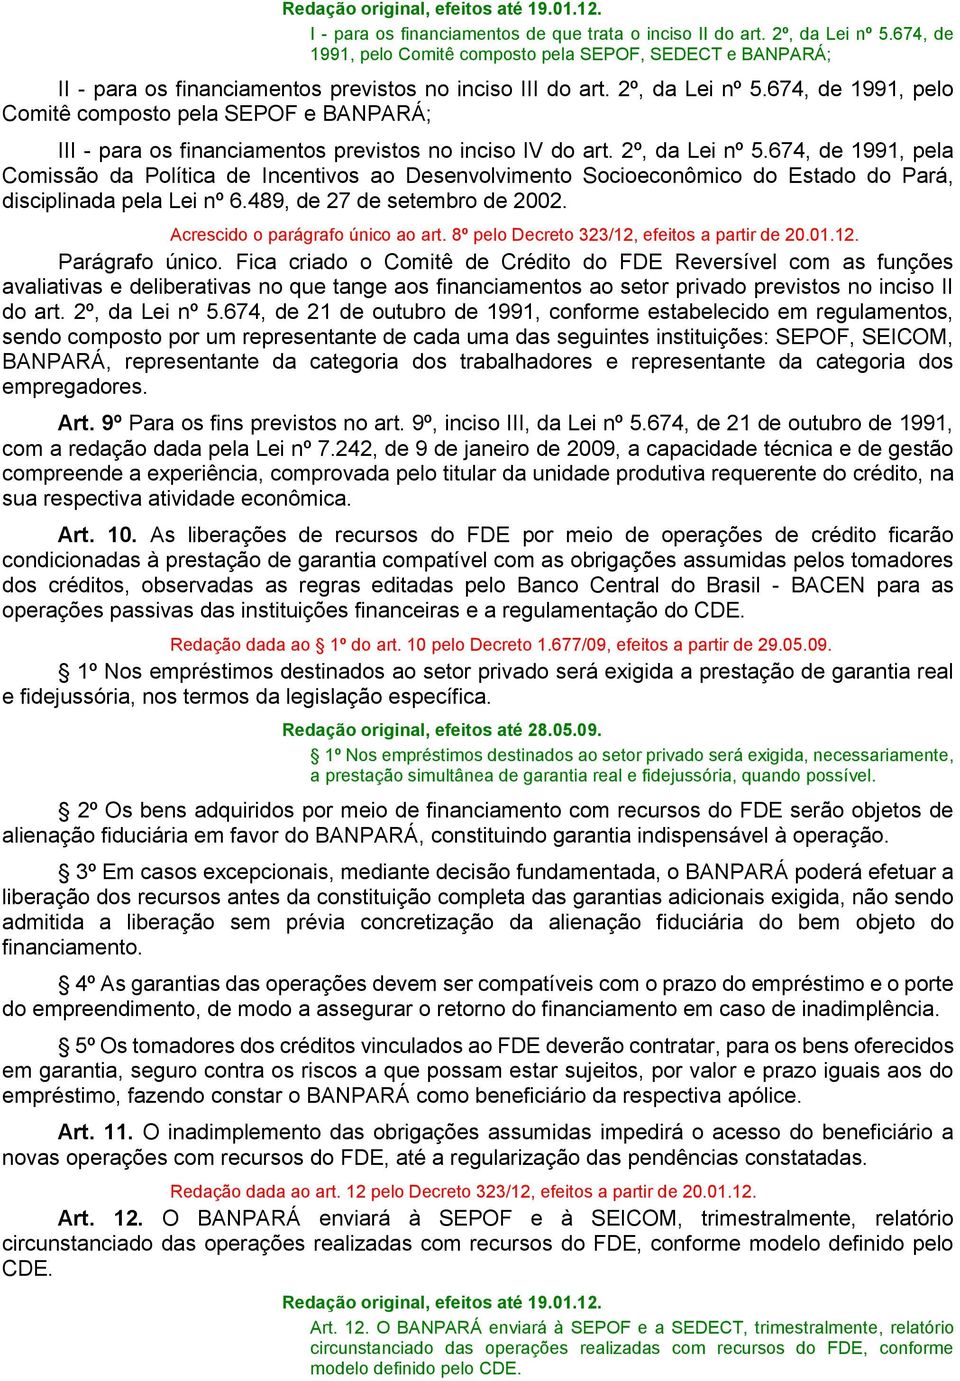 674, de 1991, pela Comissão da Política de Incentivos ao Desenvolvimento Socioeconômico do Estado do Pará, disciplinada pela Lei nº 6.489, de 27 de setembro de 2002.